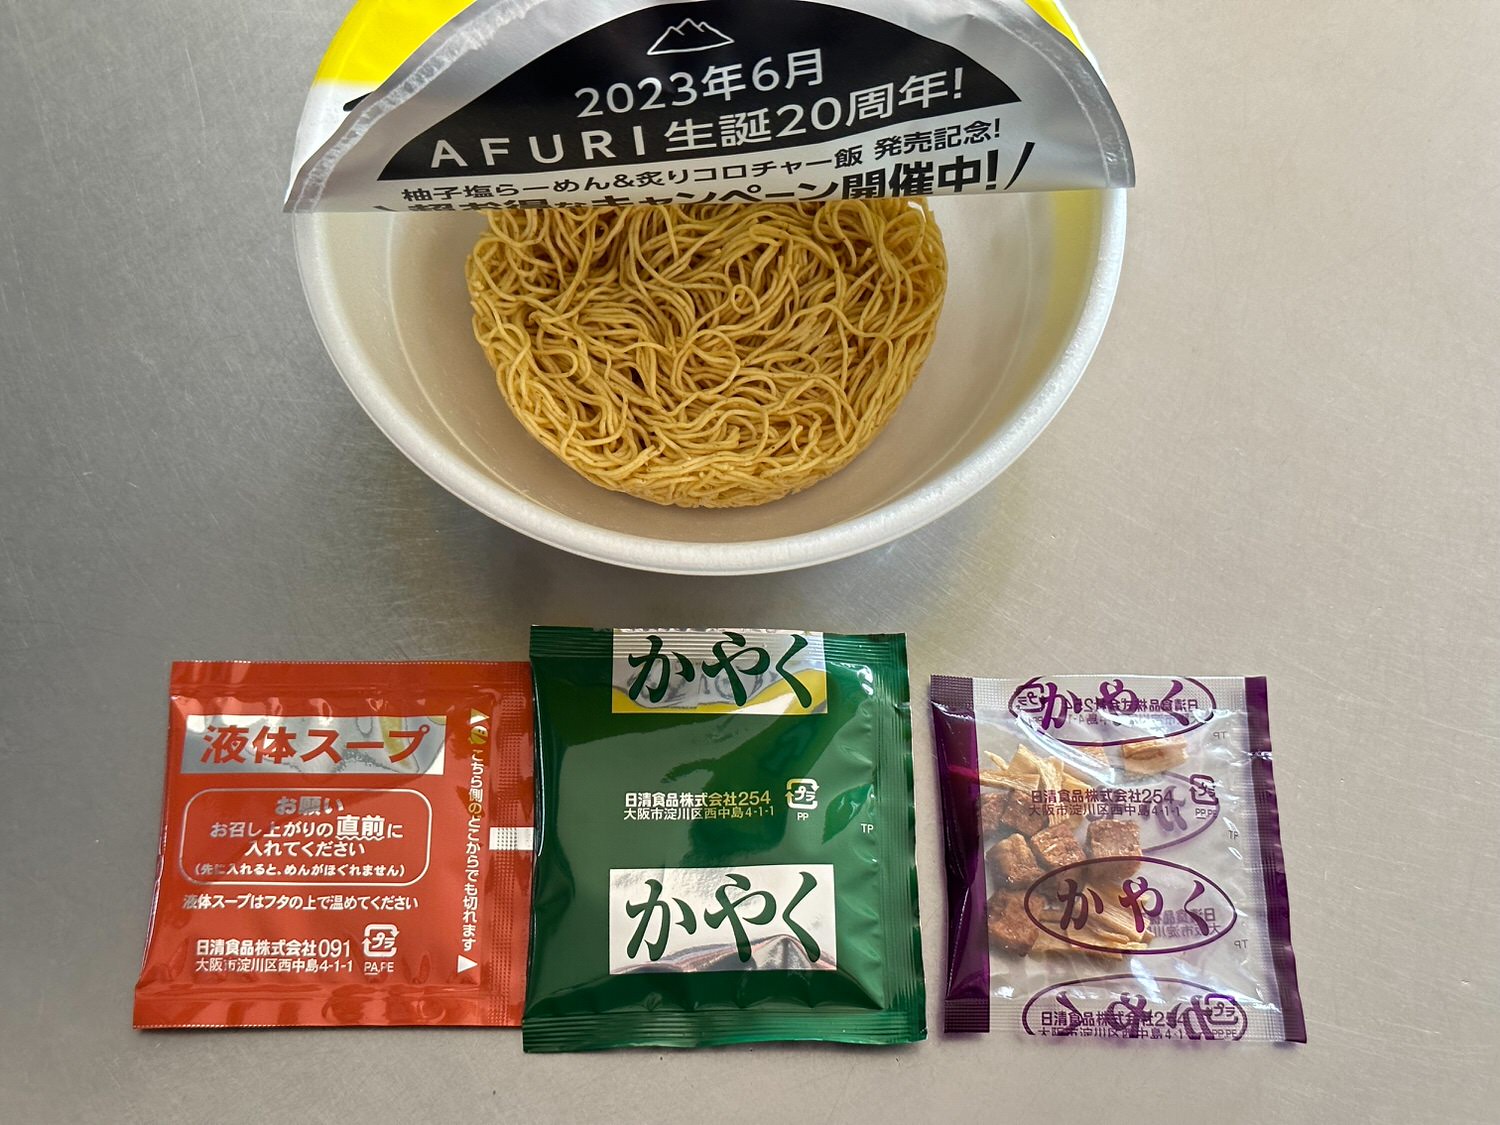 AFURI 柚子塩らーめん カップ麺 007 01